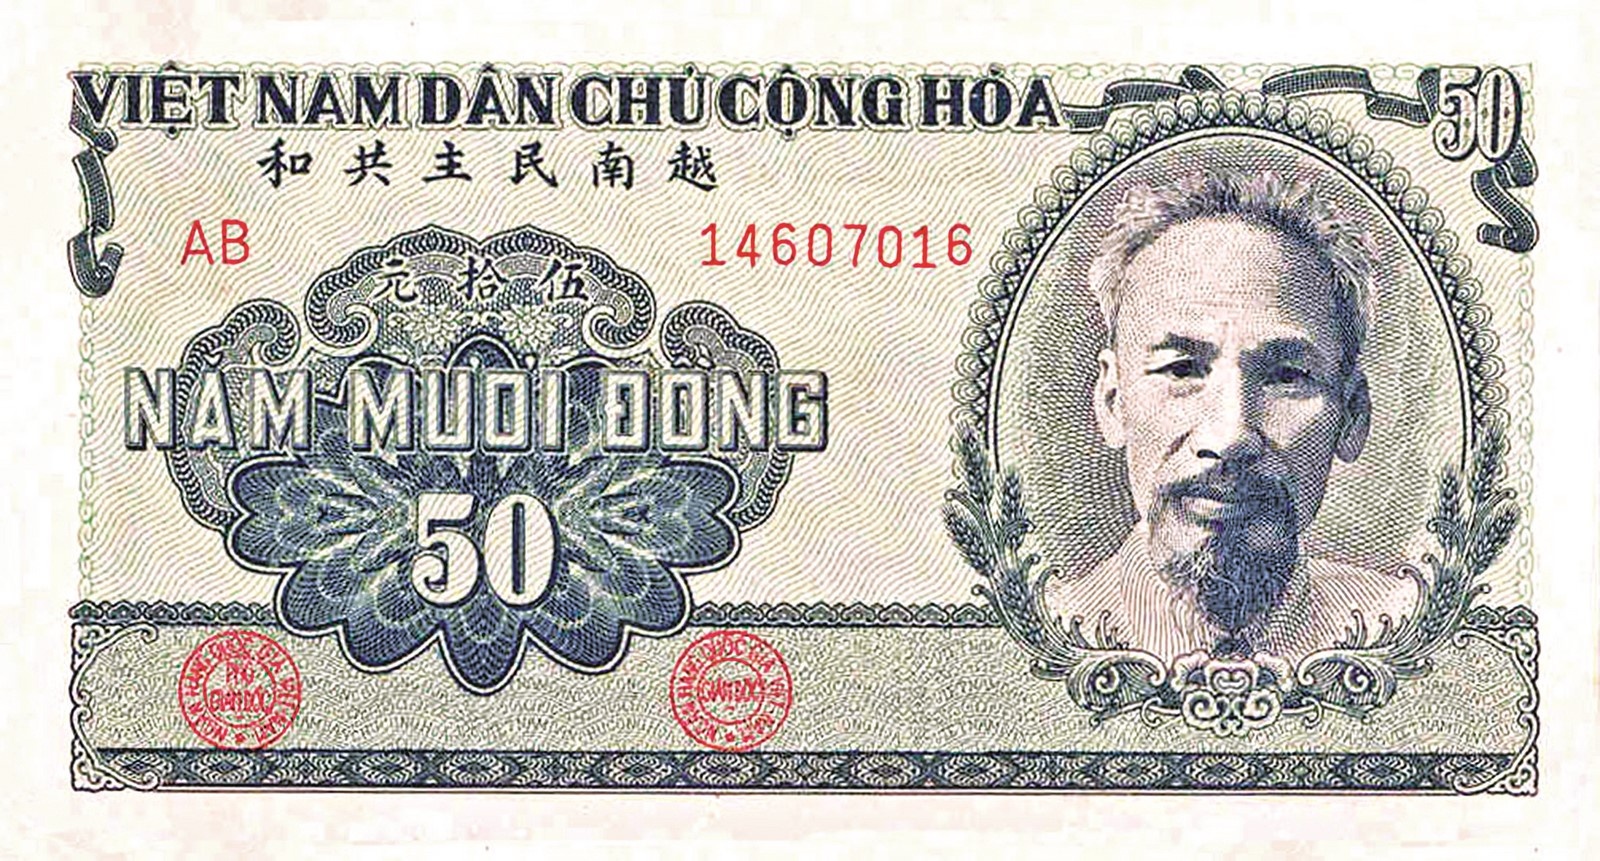 Hãy cùng khám phá lịch sử đồng tiền Việt Nam với hình ảnh đầy ấn tượng và sống động. Từ kỳ quan tiền xu Phù Đổng Thiên Vương đến những bức tranh tiền dân gian, đều sẽ được tái hiện lại trước mắt bạn. Hãy để những câu chuyện thú vị điều này thổi bay mọi căng thẳng của cuộc sống.